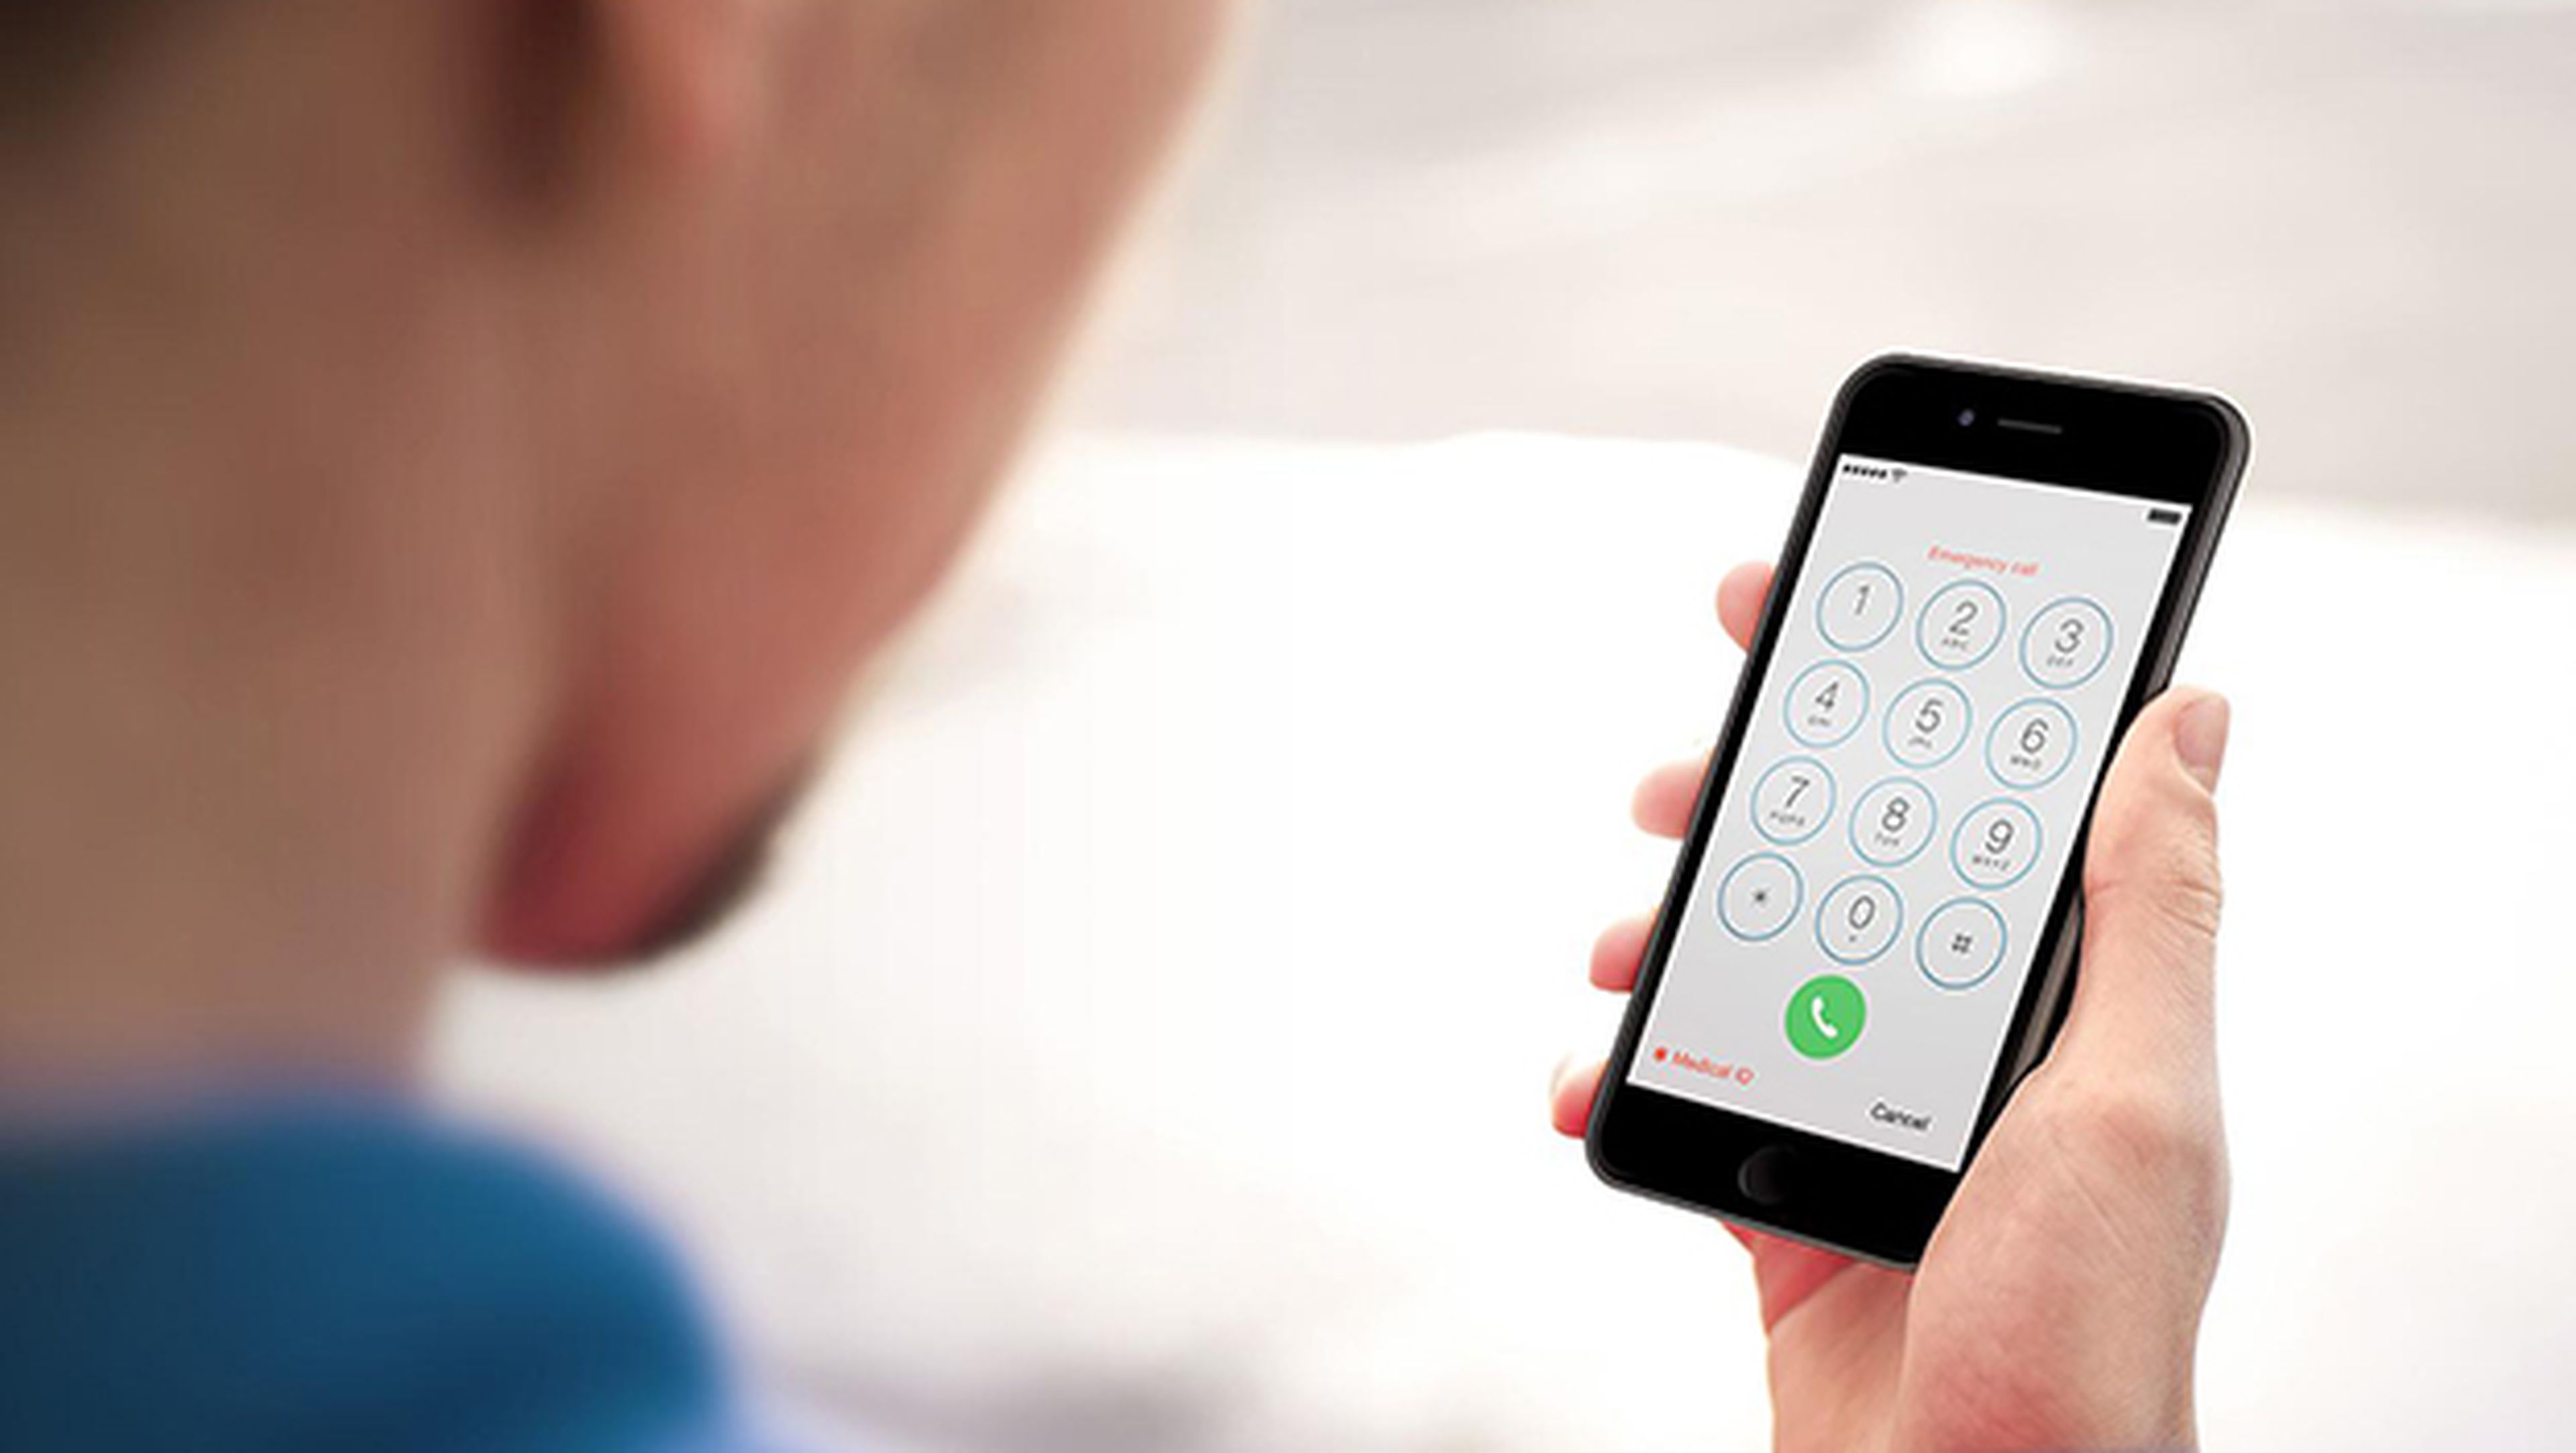 iPhone envía tu registro de llamadas a Apple aunque no quieras